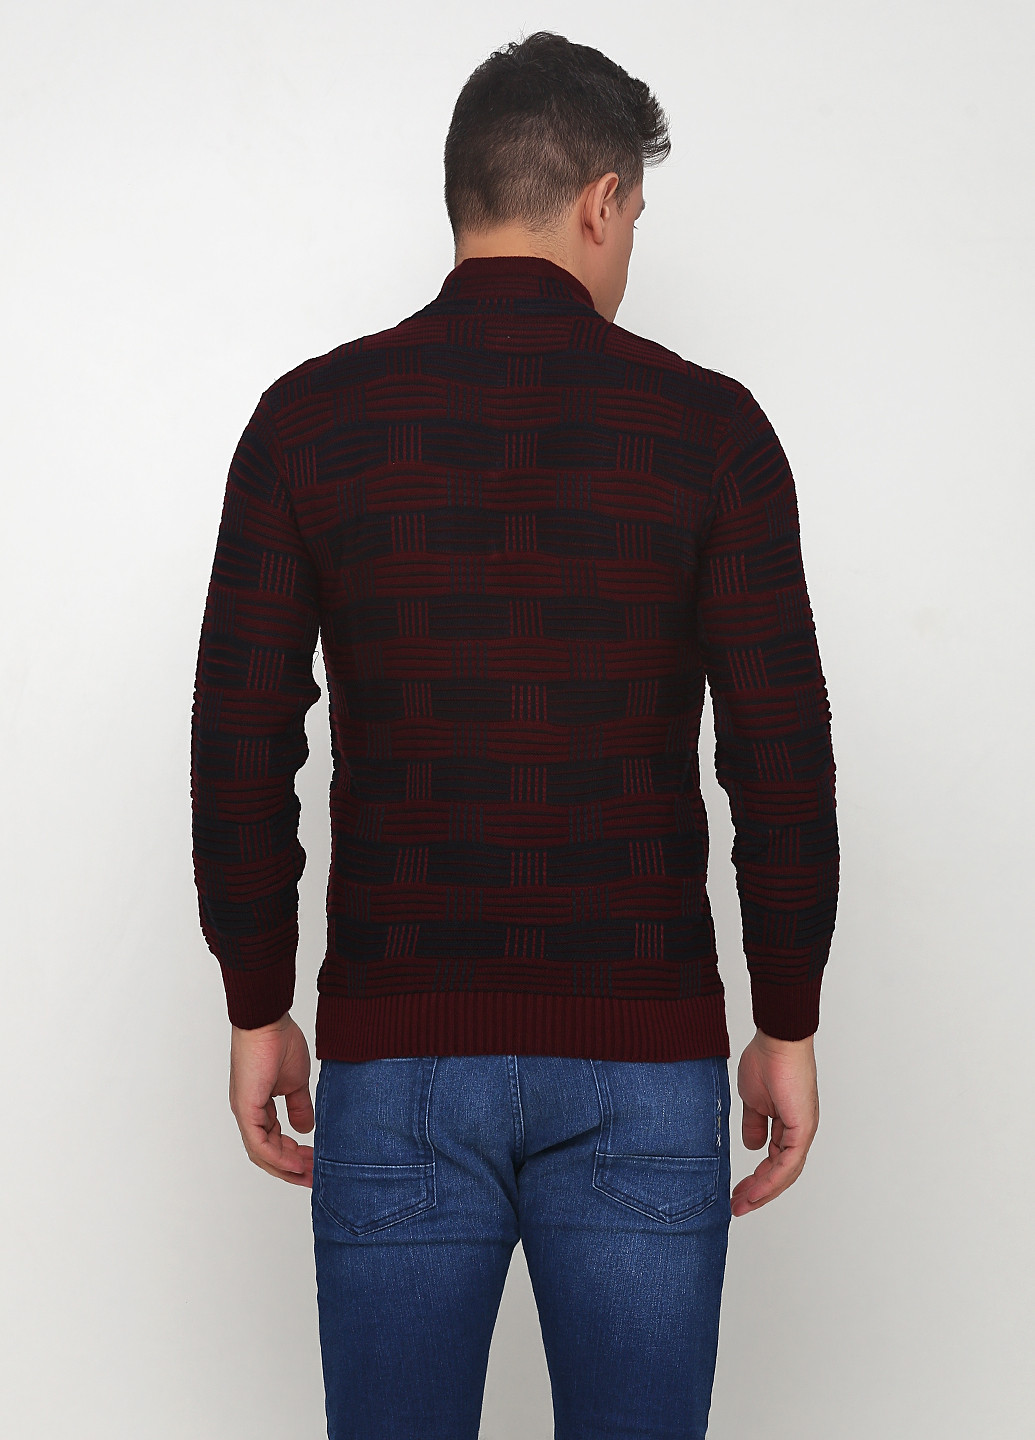 Бордовый демисезонный пуловер пуловер Renas